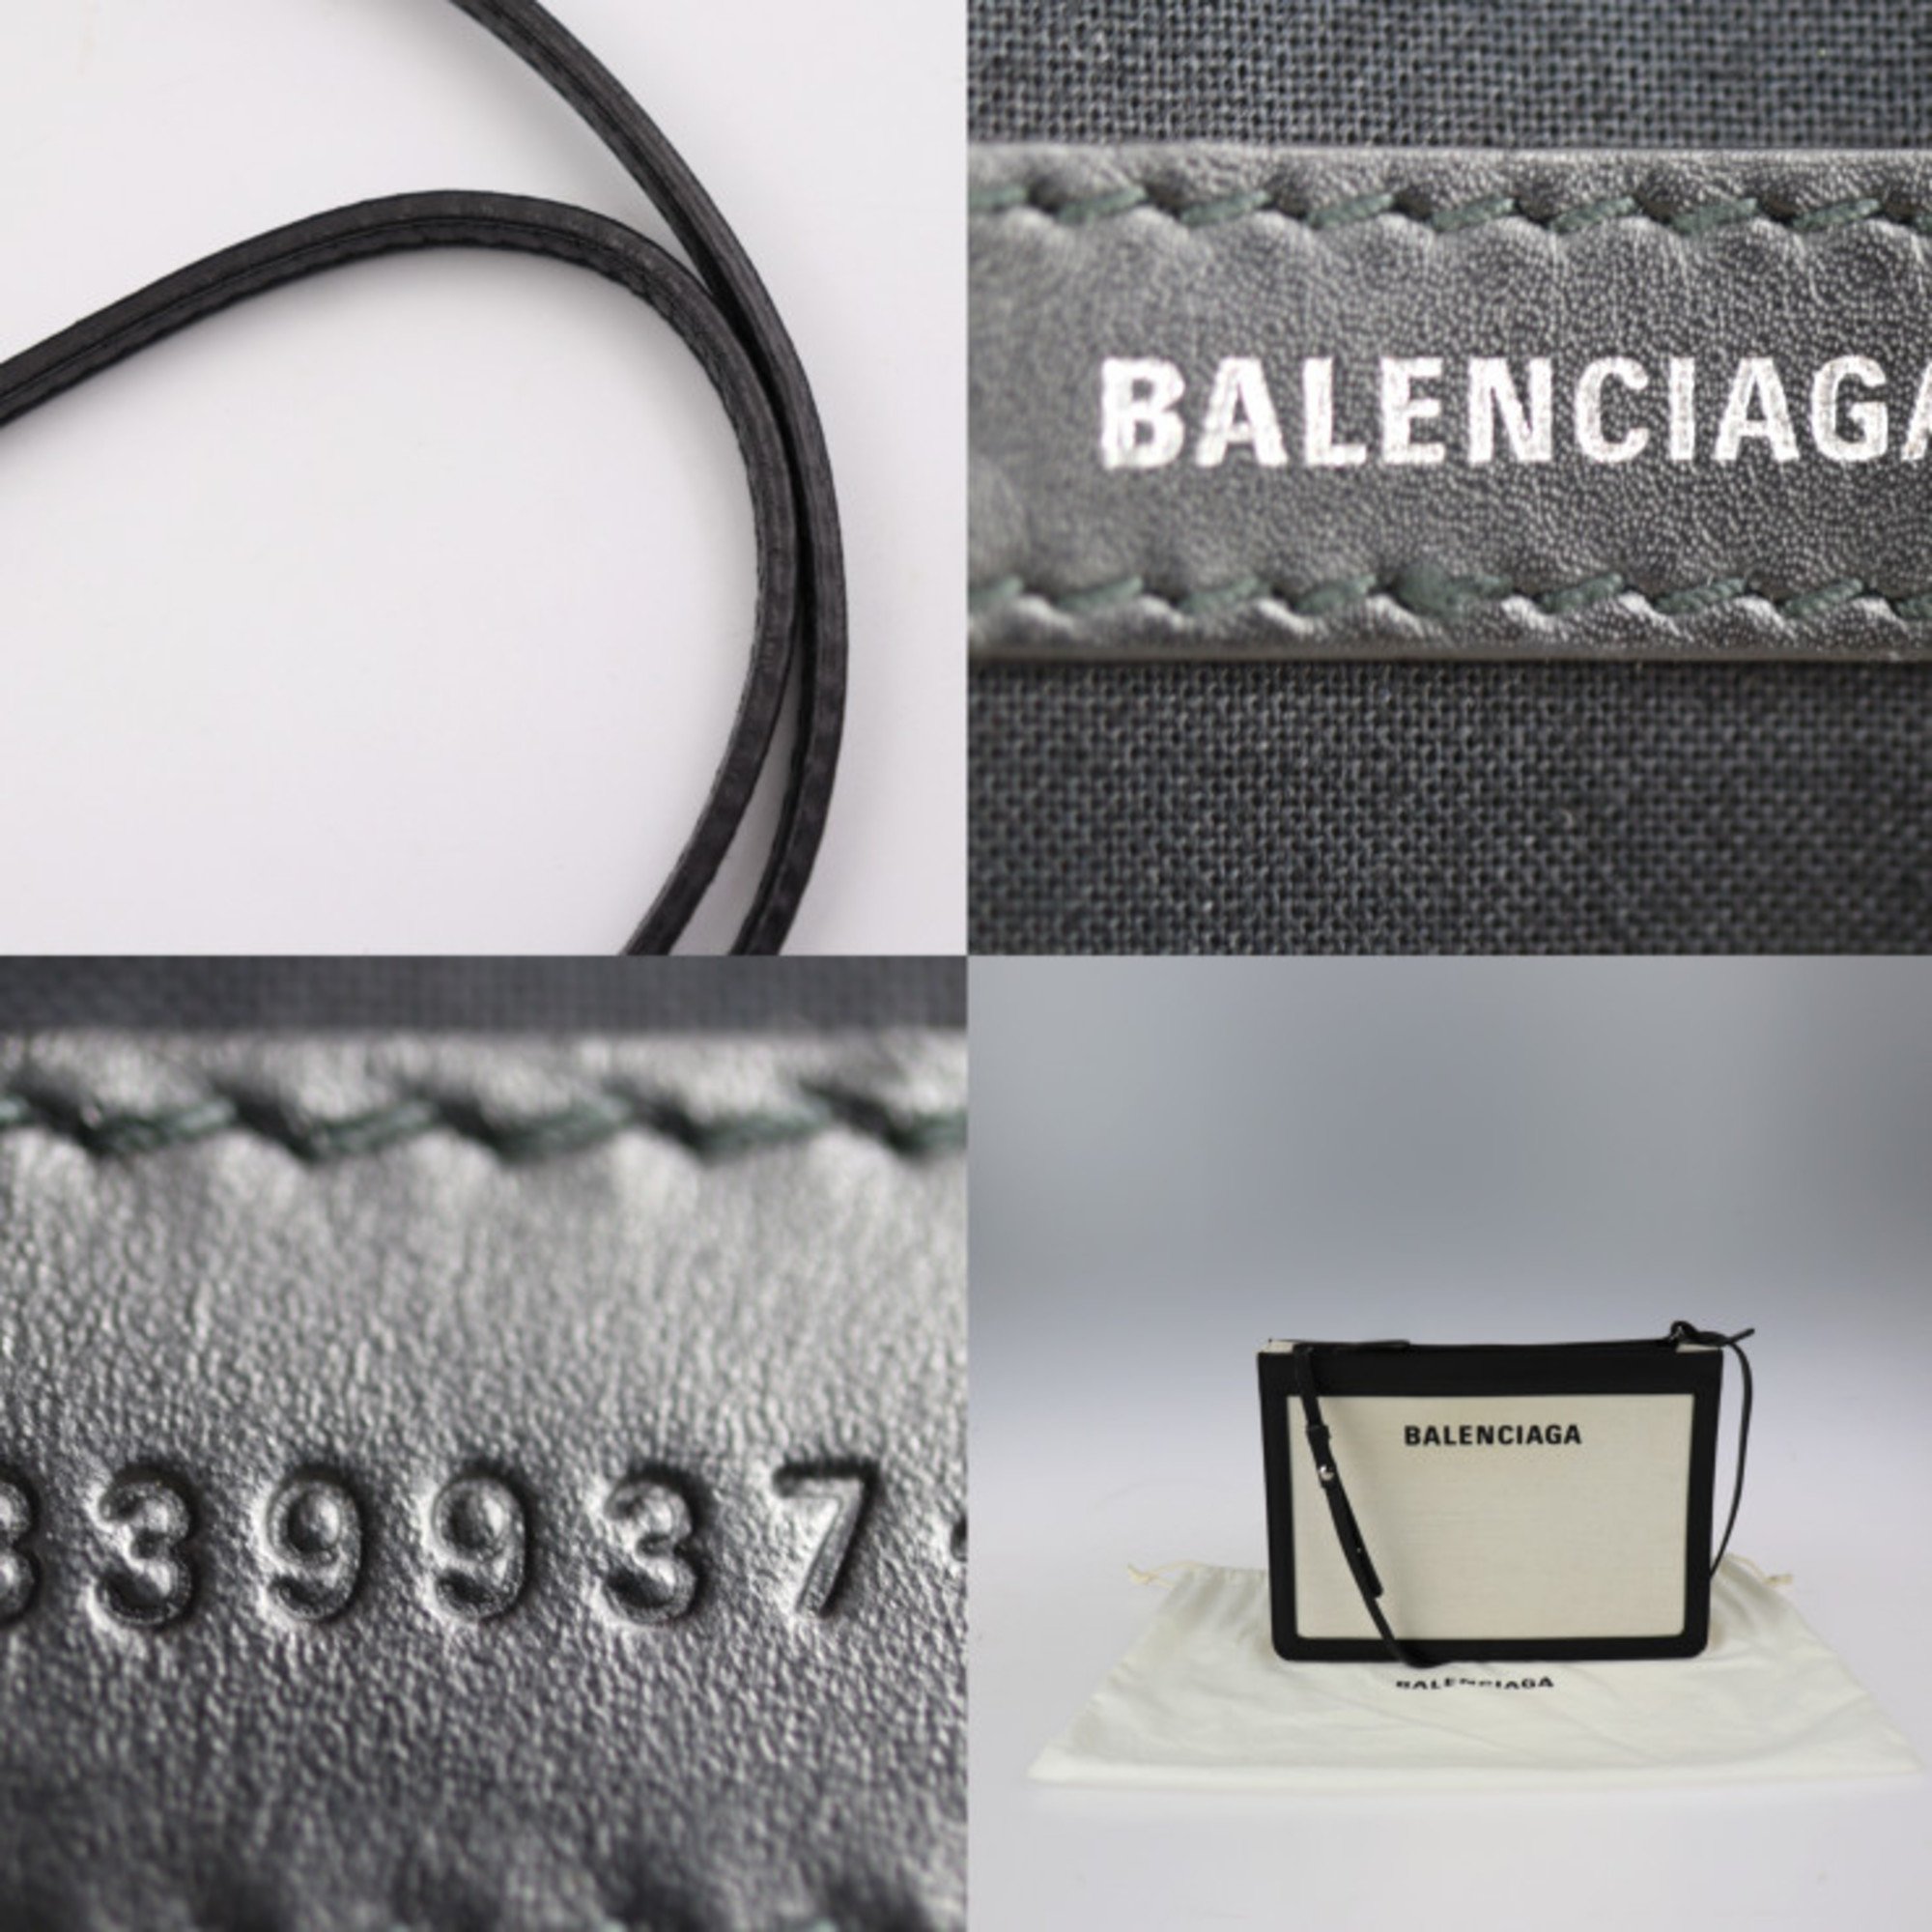 BALENCIAGA Balenciaga navy pochette shoulder bag 339937 canvas leather natural black 2WAY second